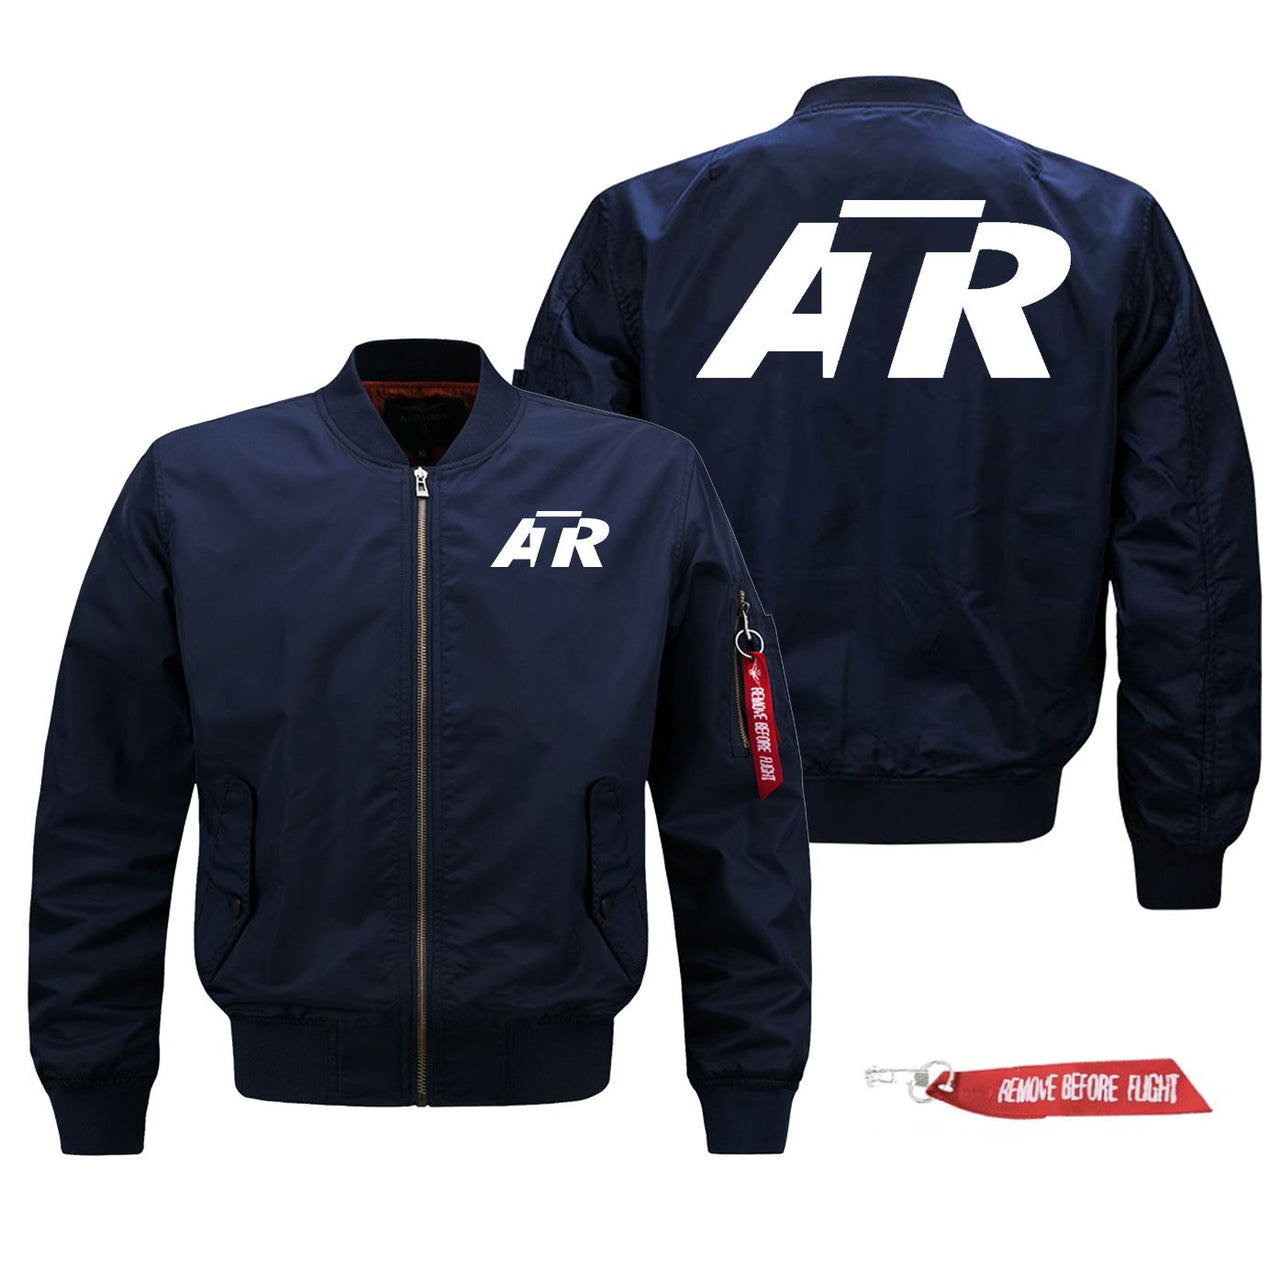 ATR & Text Designed Pilot Jackets (Customizable)